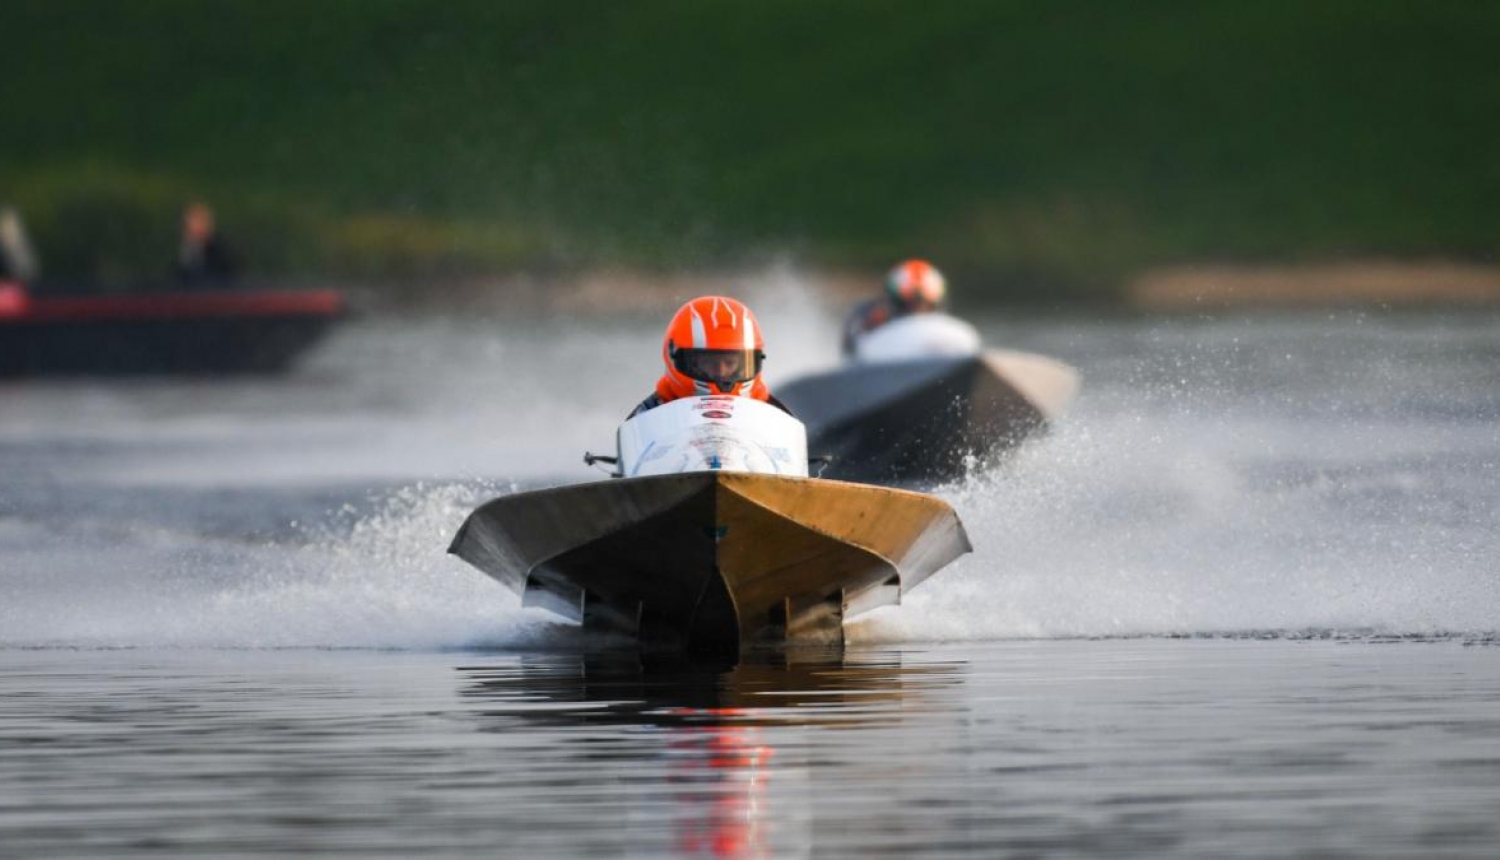 Bauskas ūdensmotosporta ātrumlaivu komandai 4.vieta sezonas pēdējā posmā